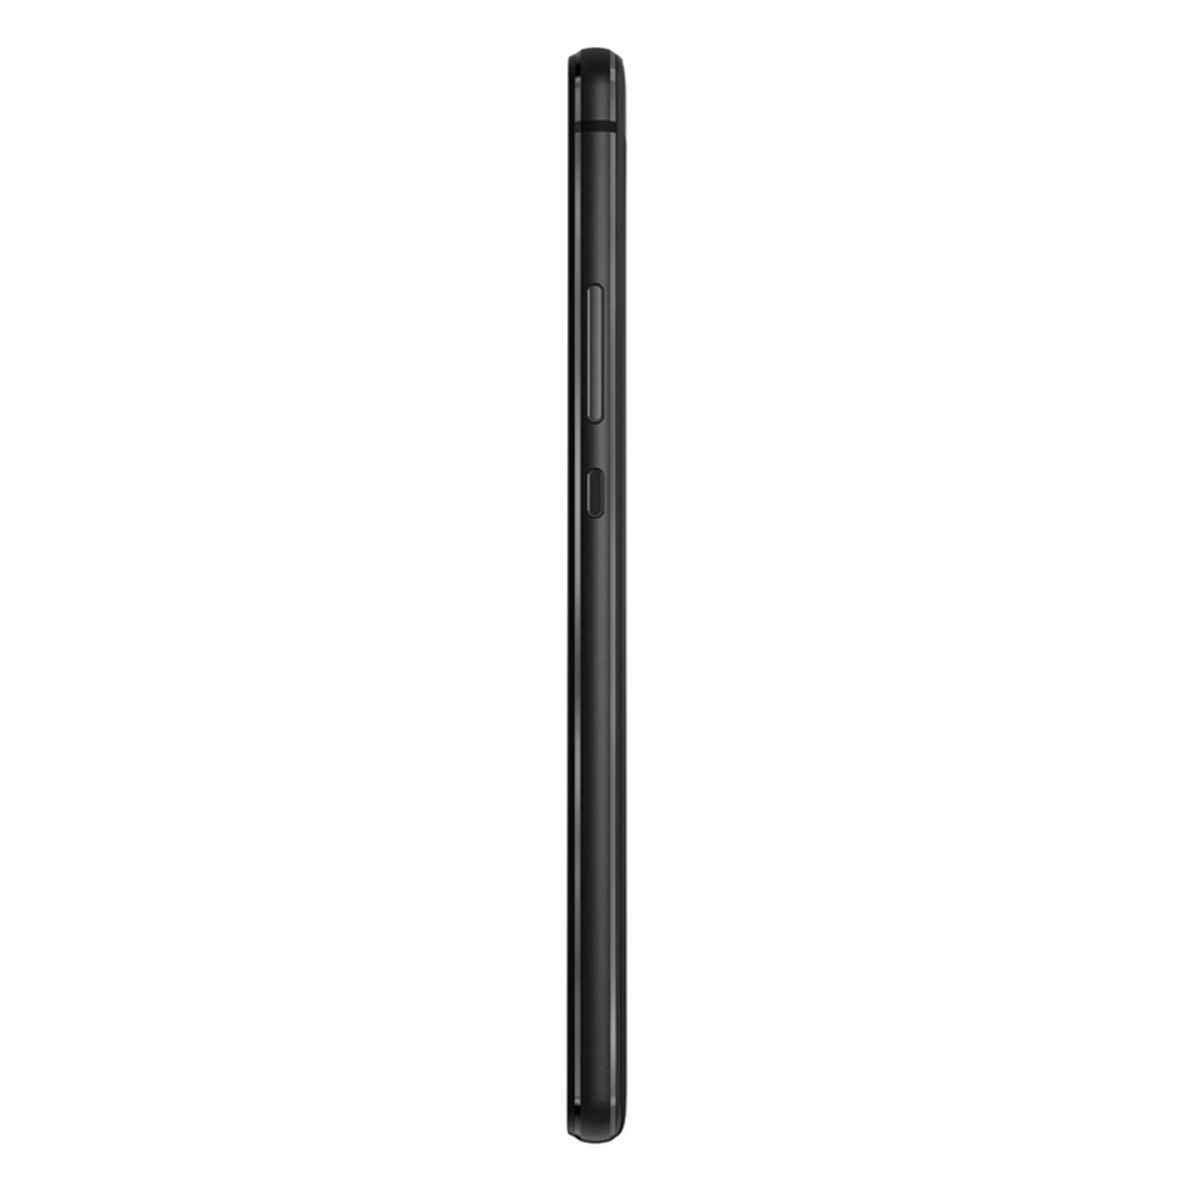 Huawei P9 Lite Mini Dual SIM 16 жесткий ГБ Цветной черный смартфон